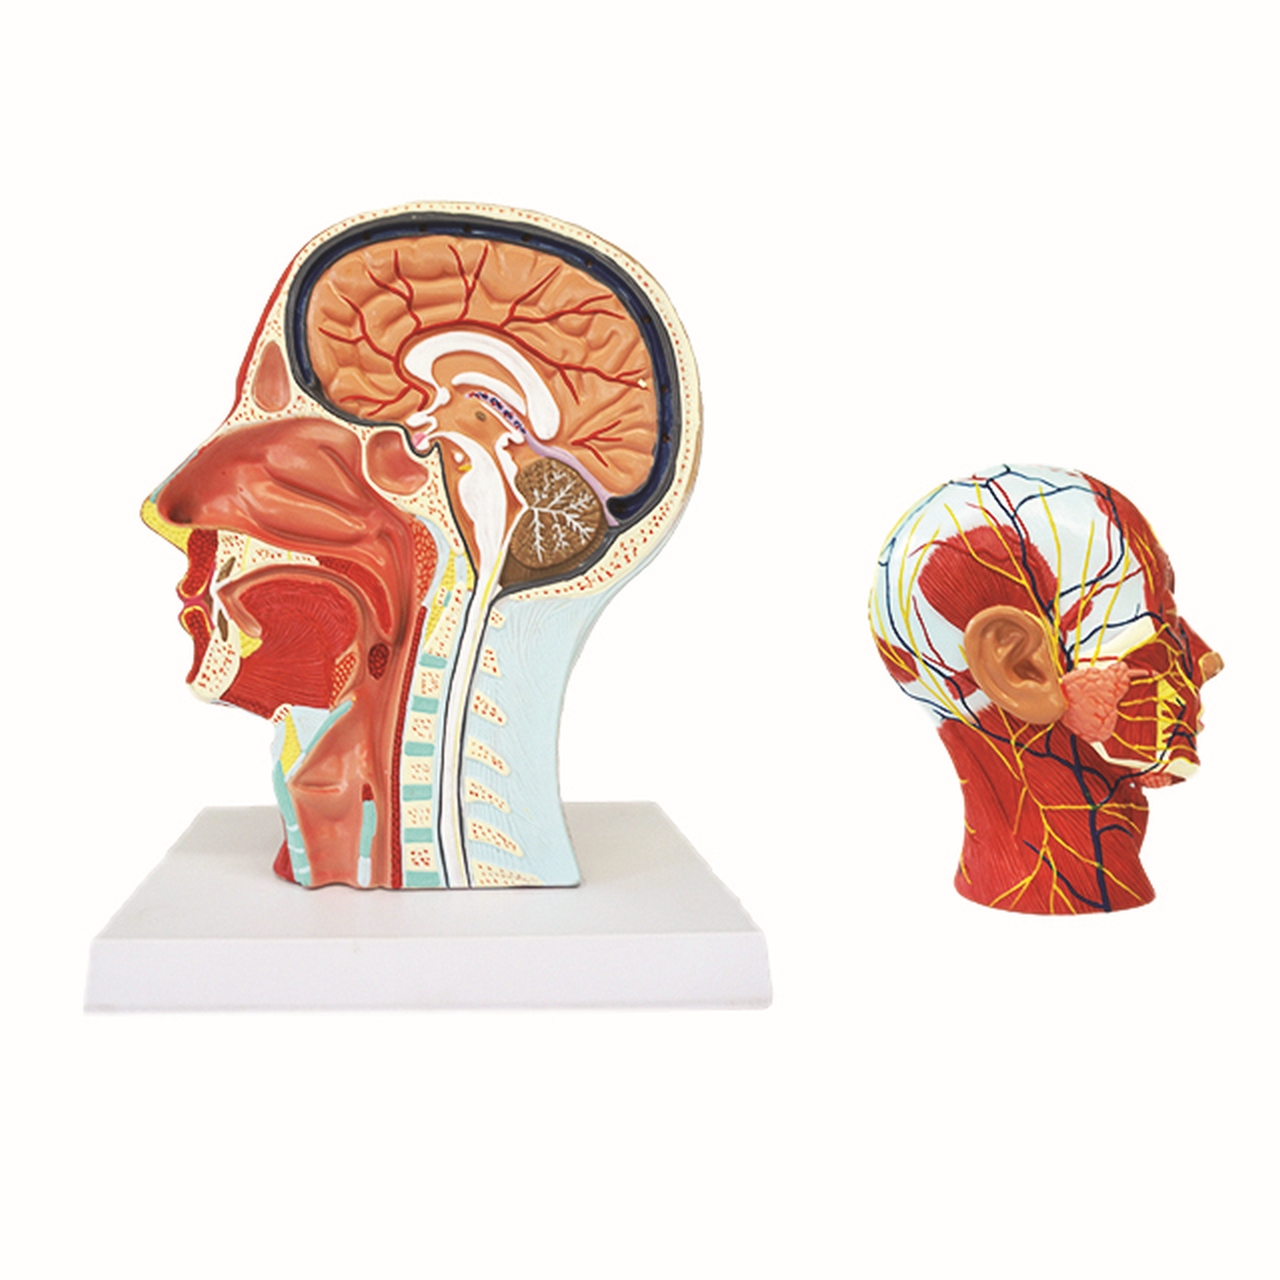 Sectiunea capului cu sistemul muscular si vascular-nervos, 27 x 10 x 22 cm